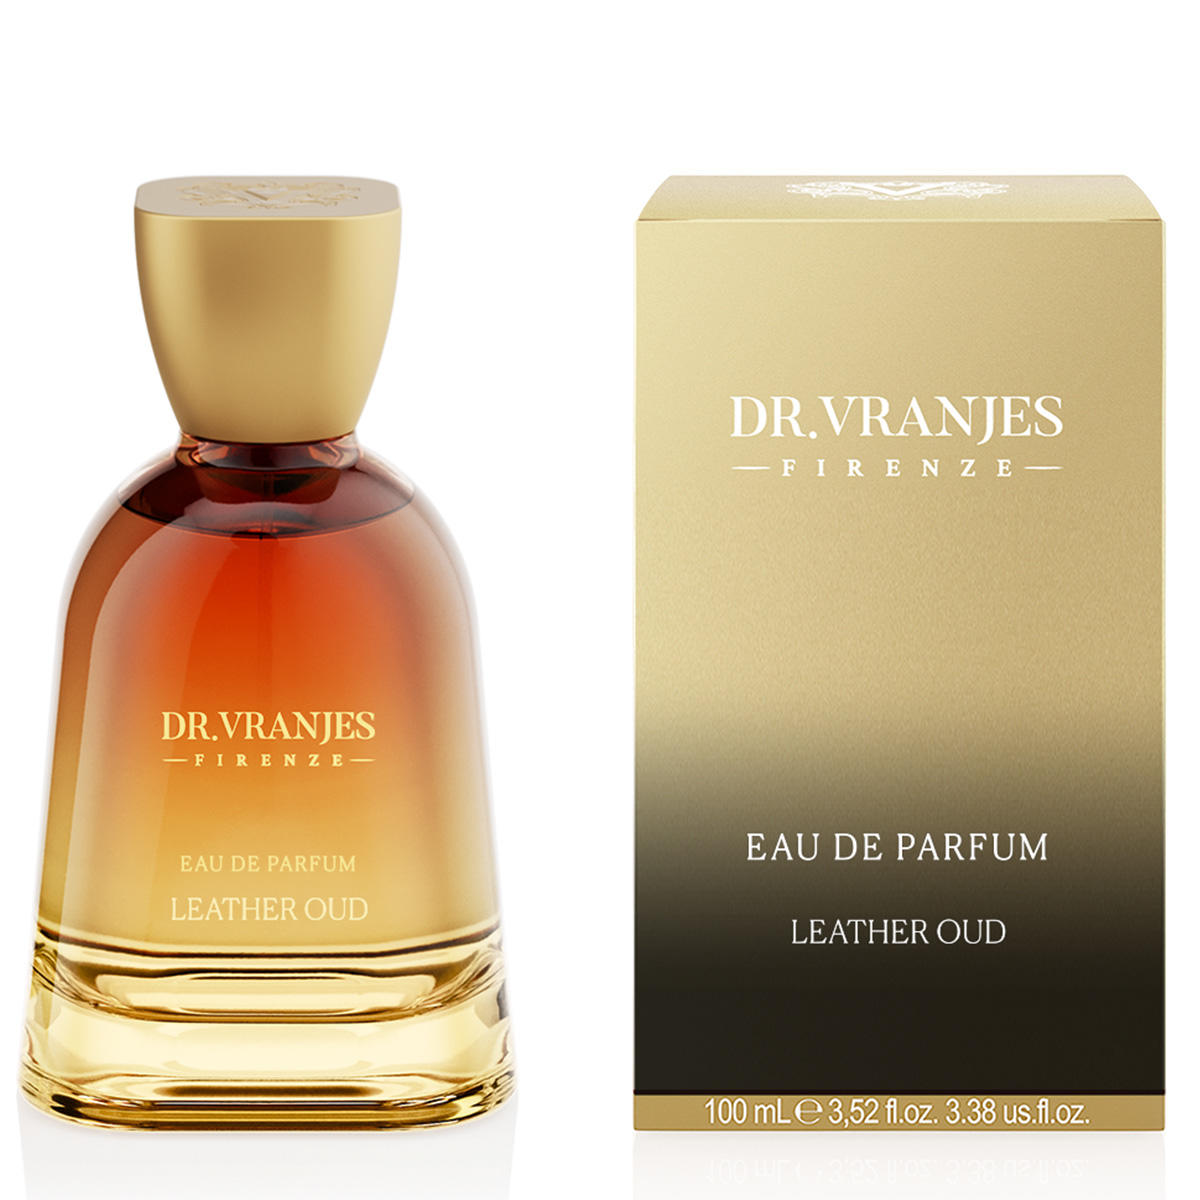 DR. VRANJES FIRENZE Leather Oud Eau de Parfum 100 ml - 2